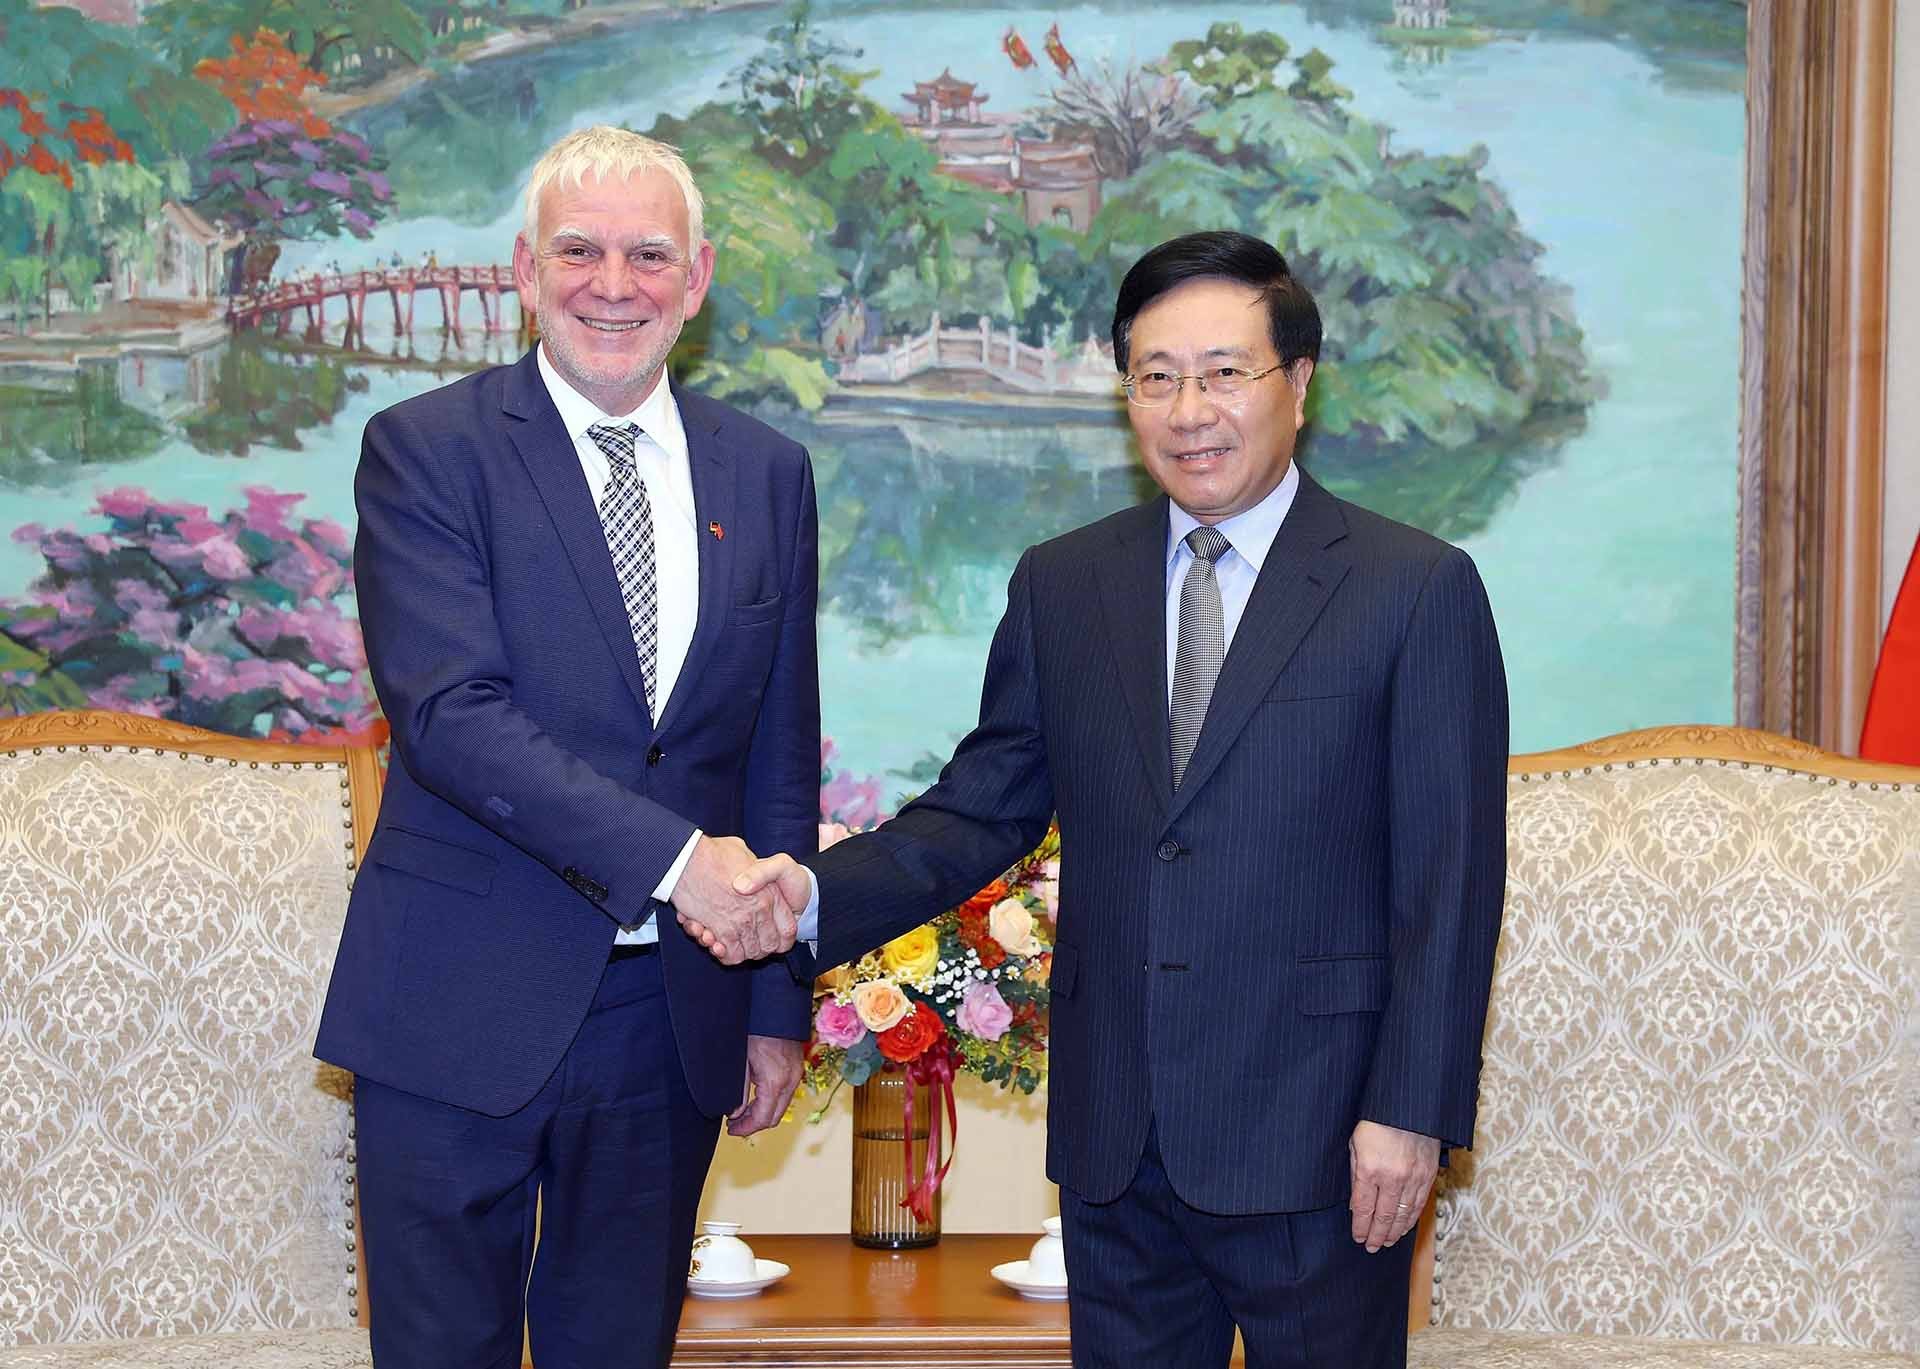 Phó Thủ tướng Thường trực Phạm Bình Minh tiếp ông Jochen Flasbarth, Quốc Vụ khanh Bộ hợp tác kinh tế và phát triển Đức. (Nguồn: TTXVN)